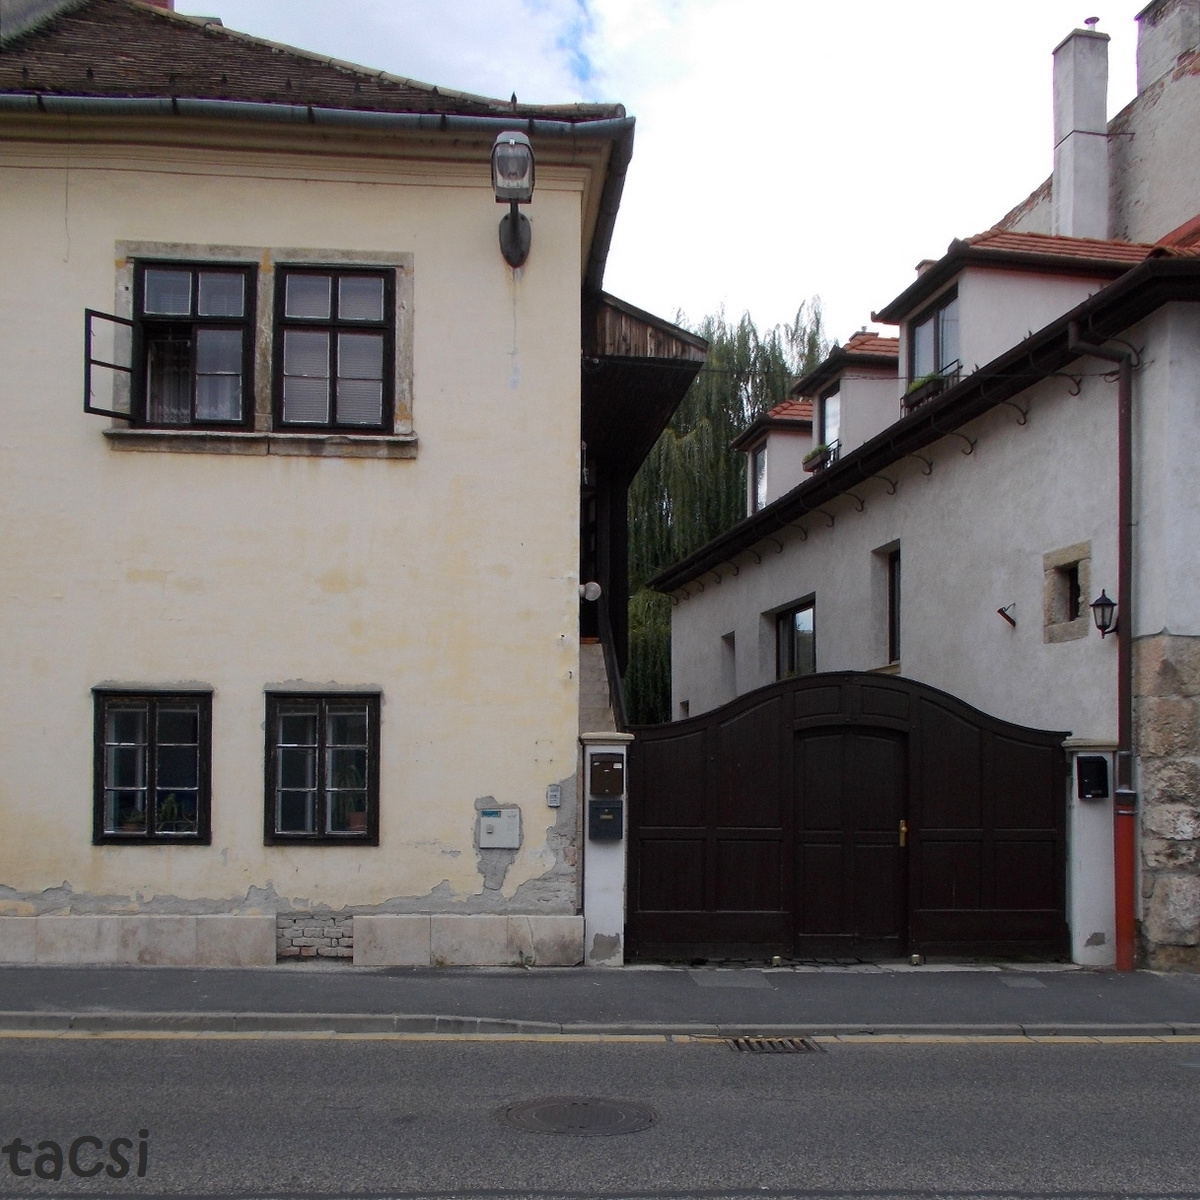 Ujteleki utca 18. ház (2013.09.14.)